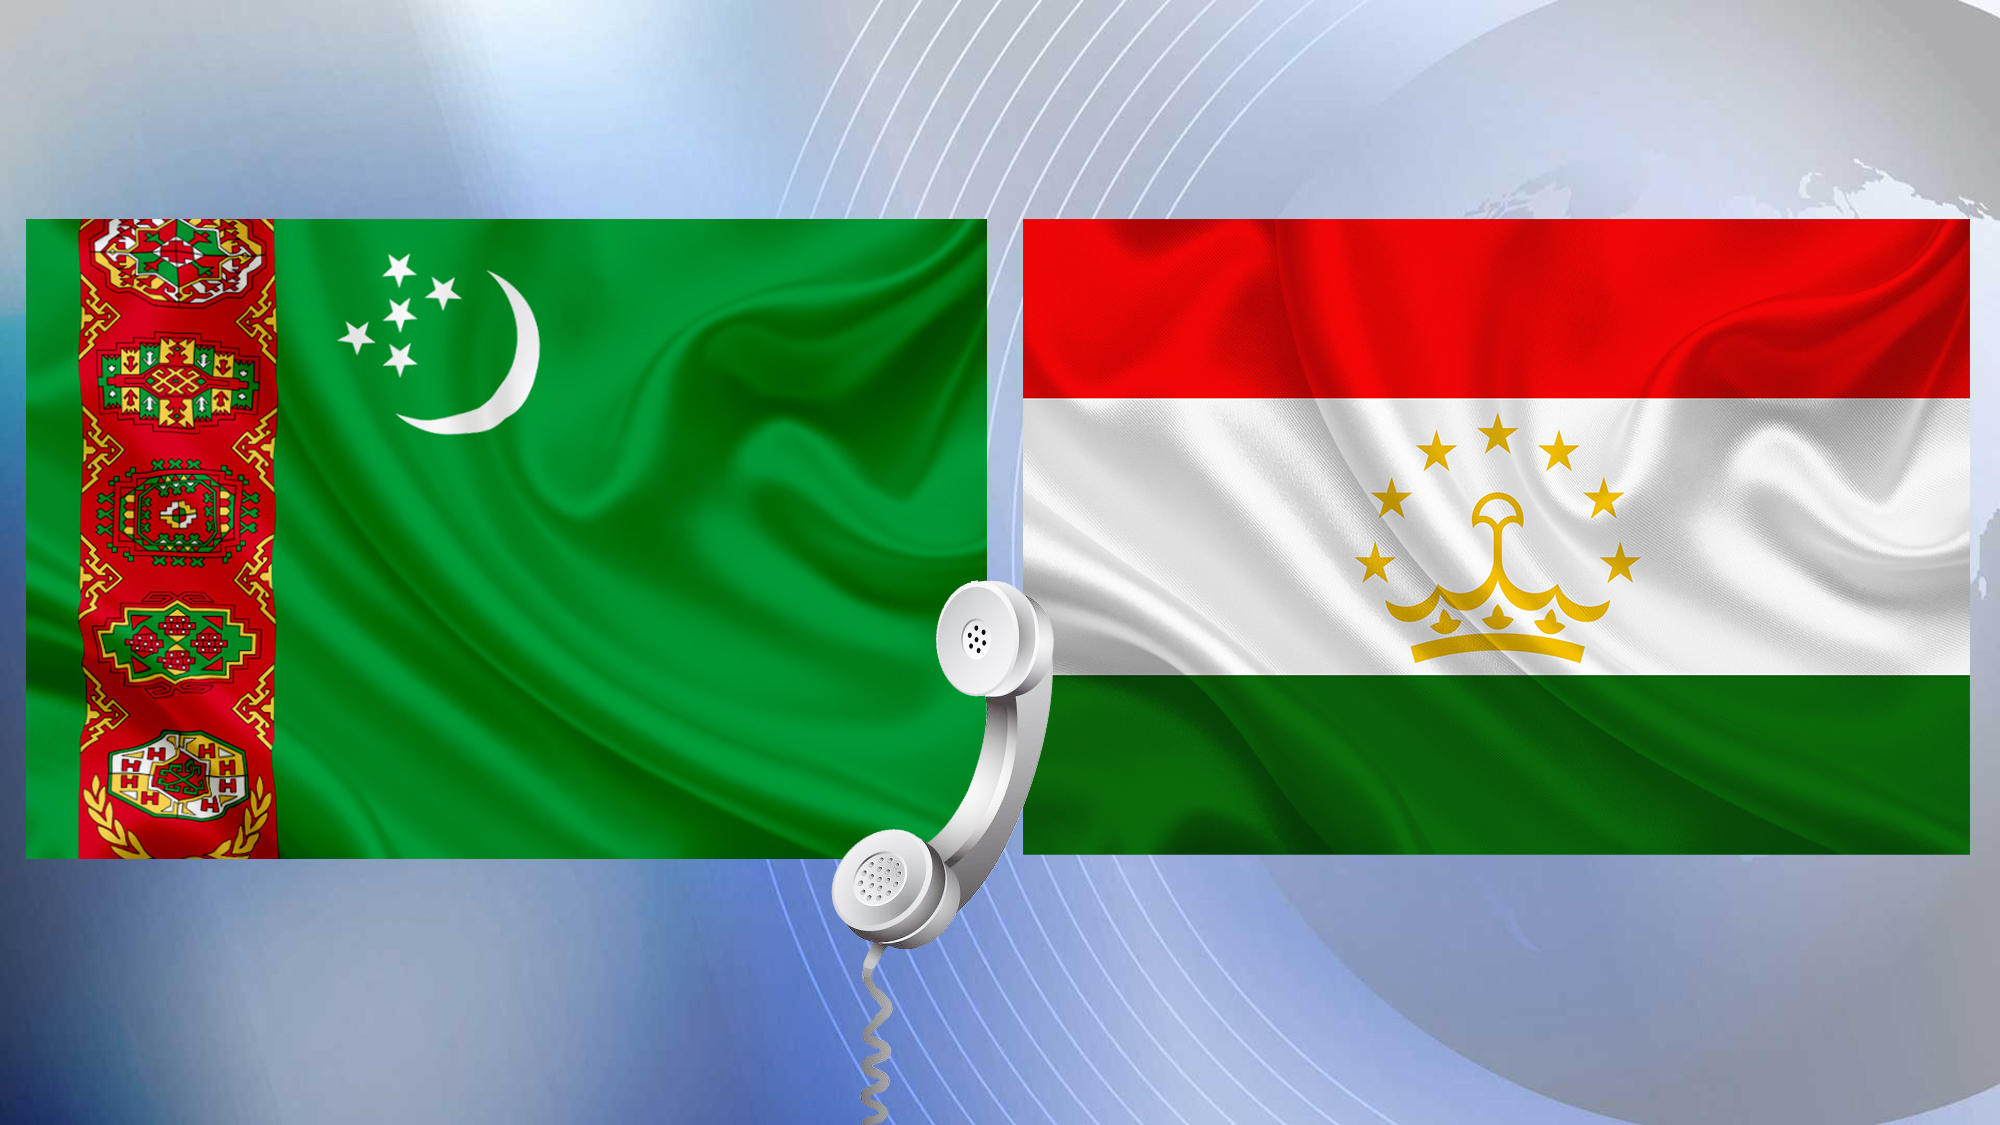 Türkmenistanyň Prezidentiniň we Täjigistan Respublikasynyň Prezidentiniň arasynda  telefon arkaly söhbetdeşlik